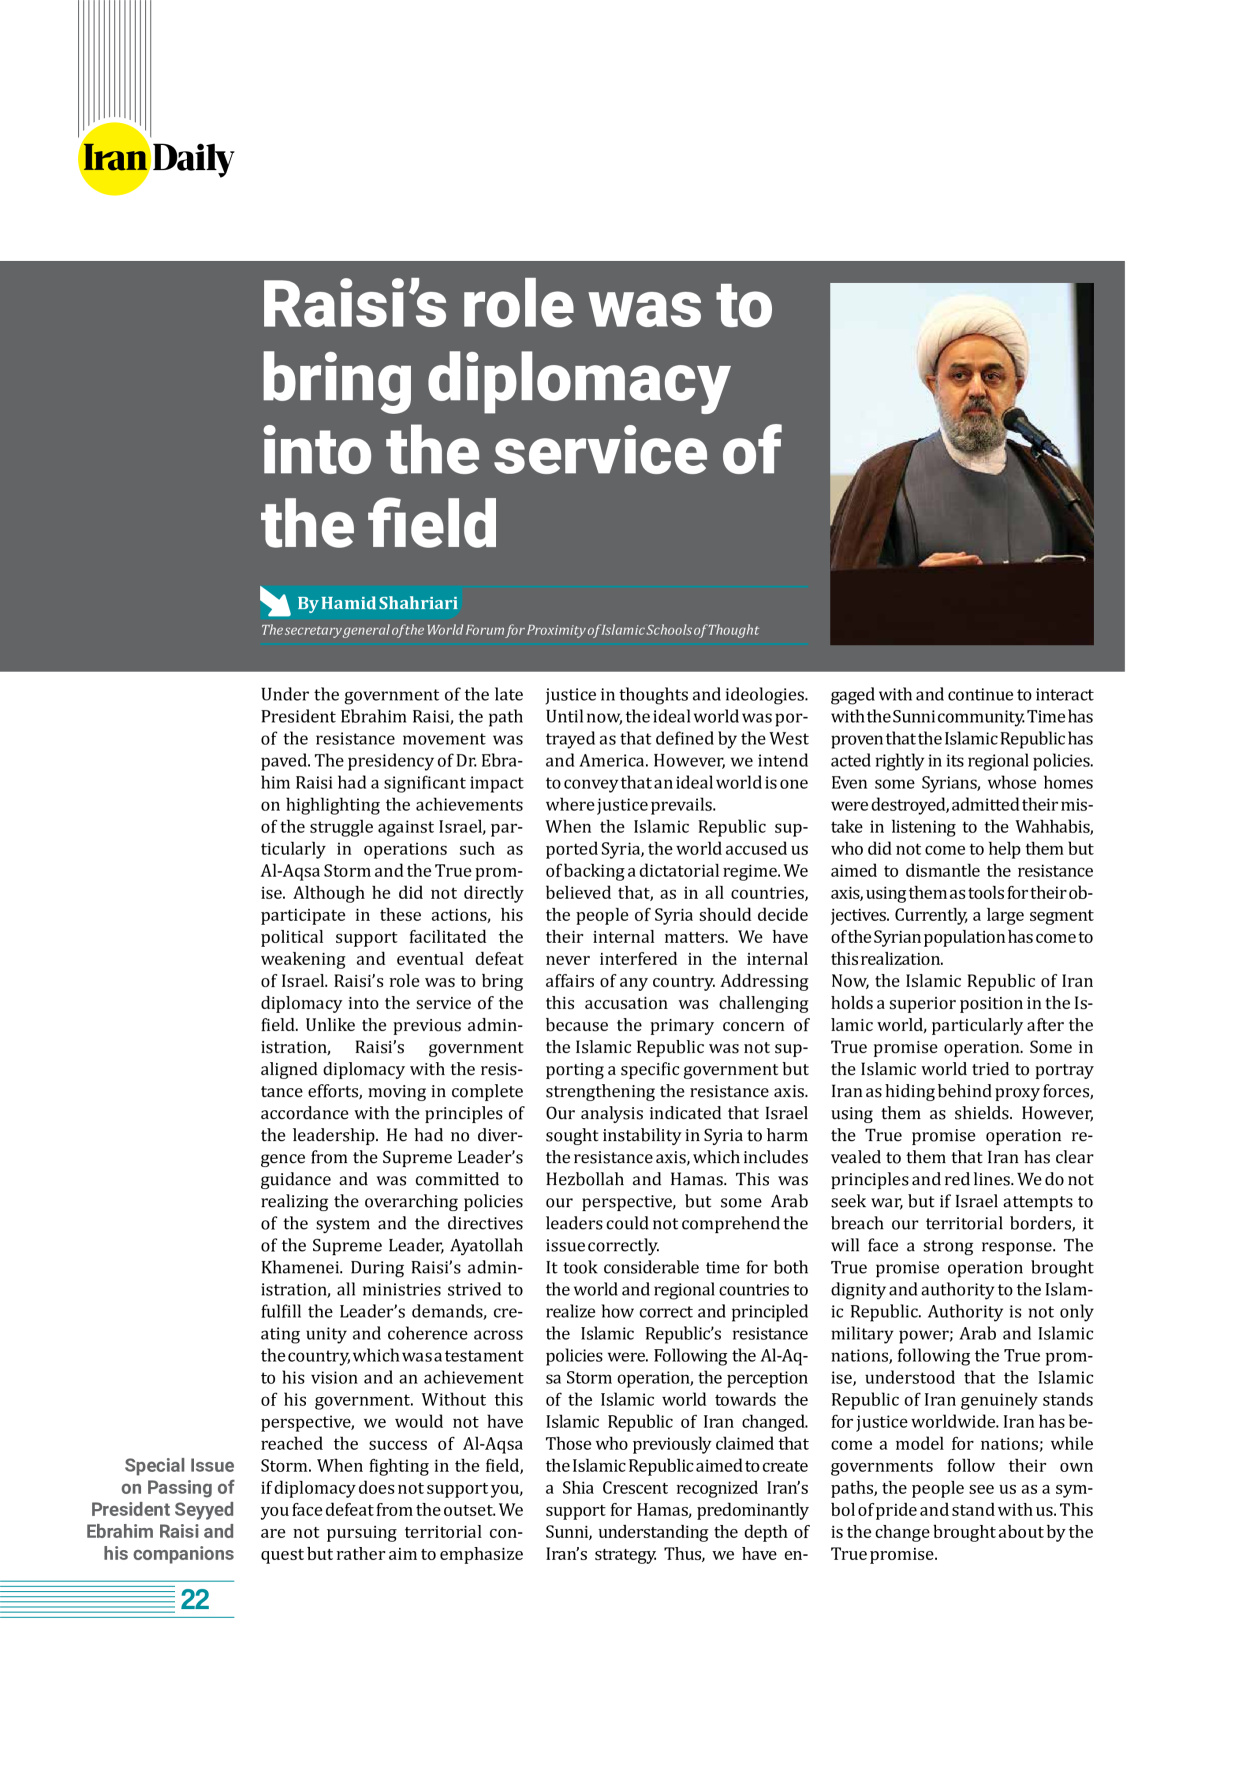 روزنامه ایران - ویژه نامه وِزه نامه چهلم شهید رییسی( انگلیسی) - ۱۷ تیر ۱۴۰۳ - صفحه ۲۲